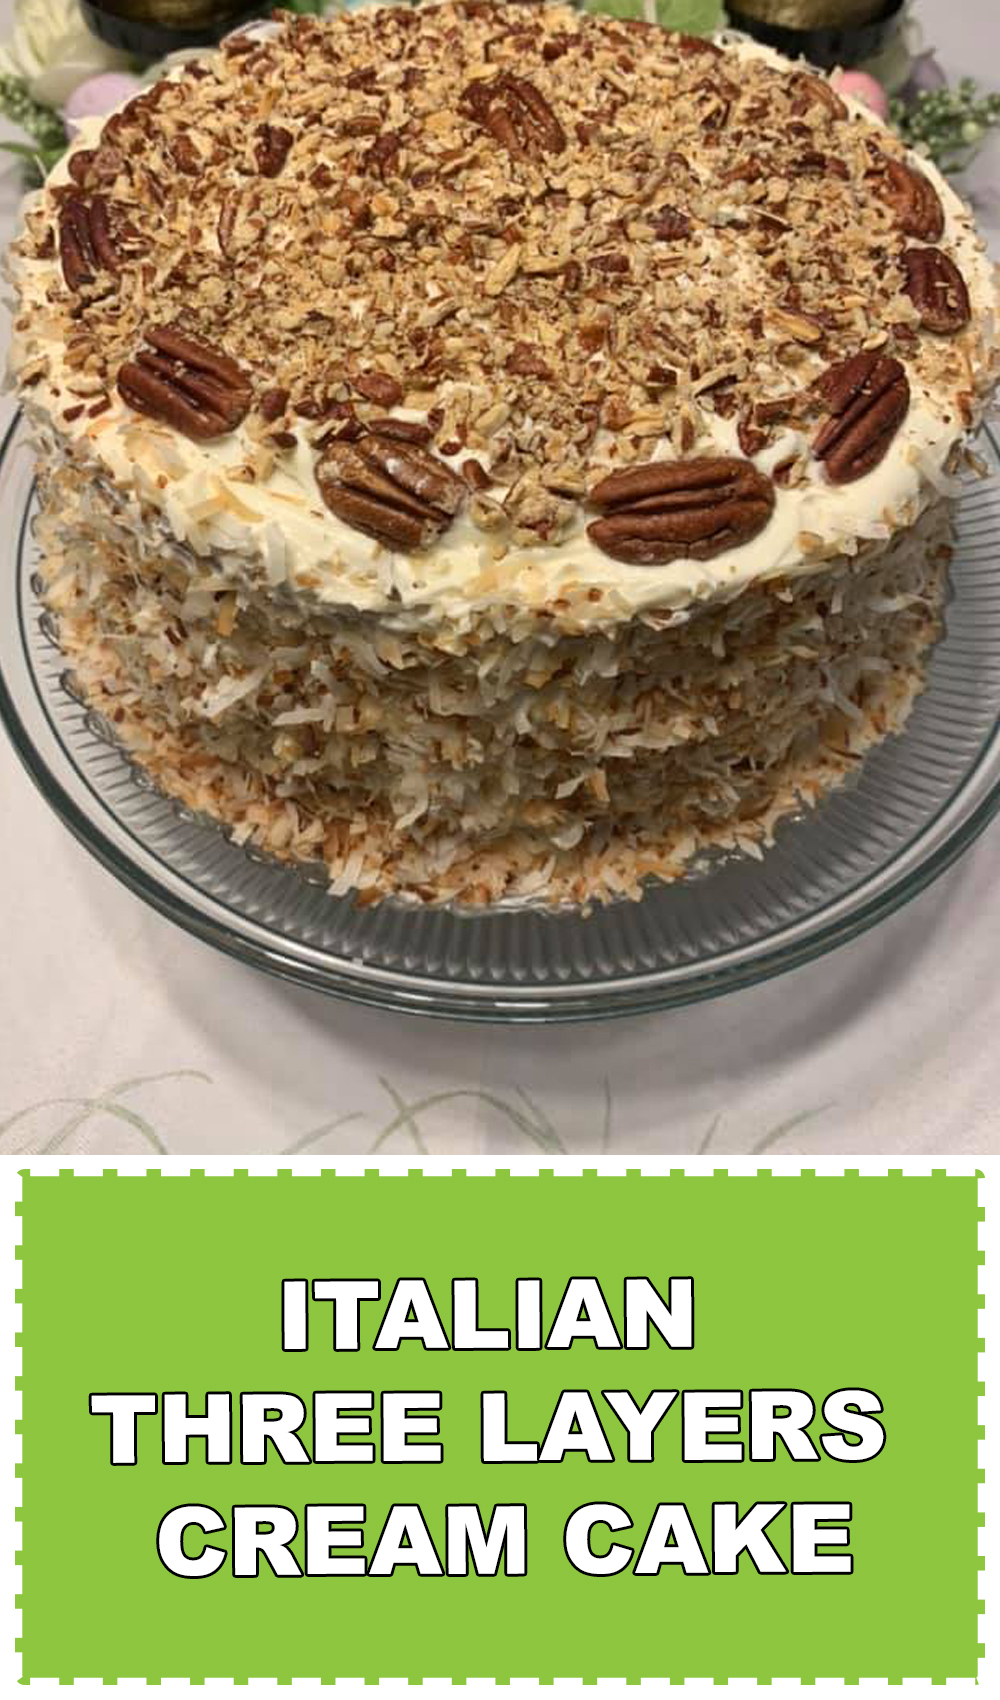 Italian three layers cream cake